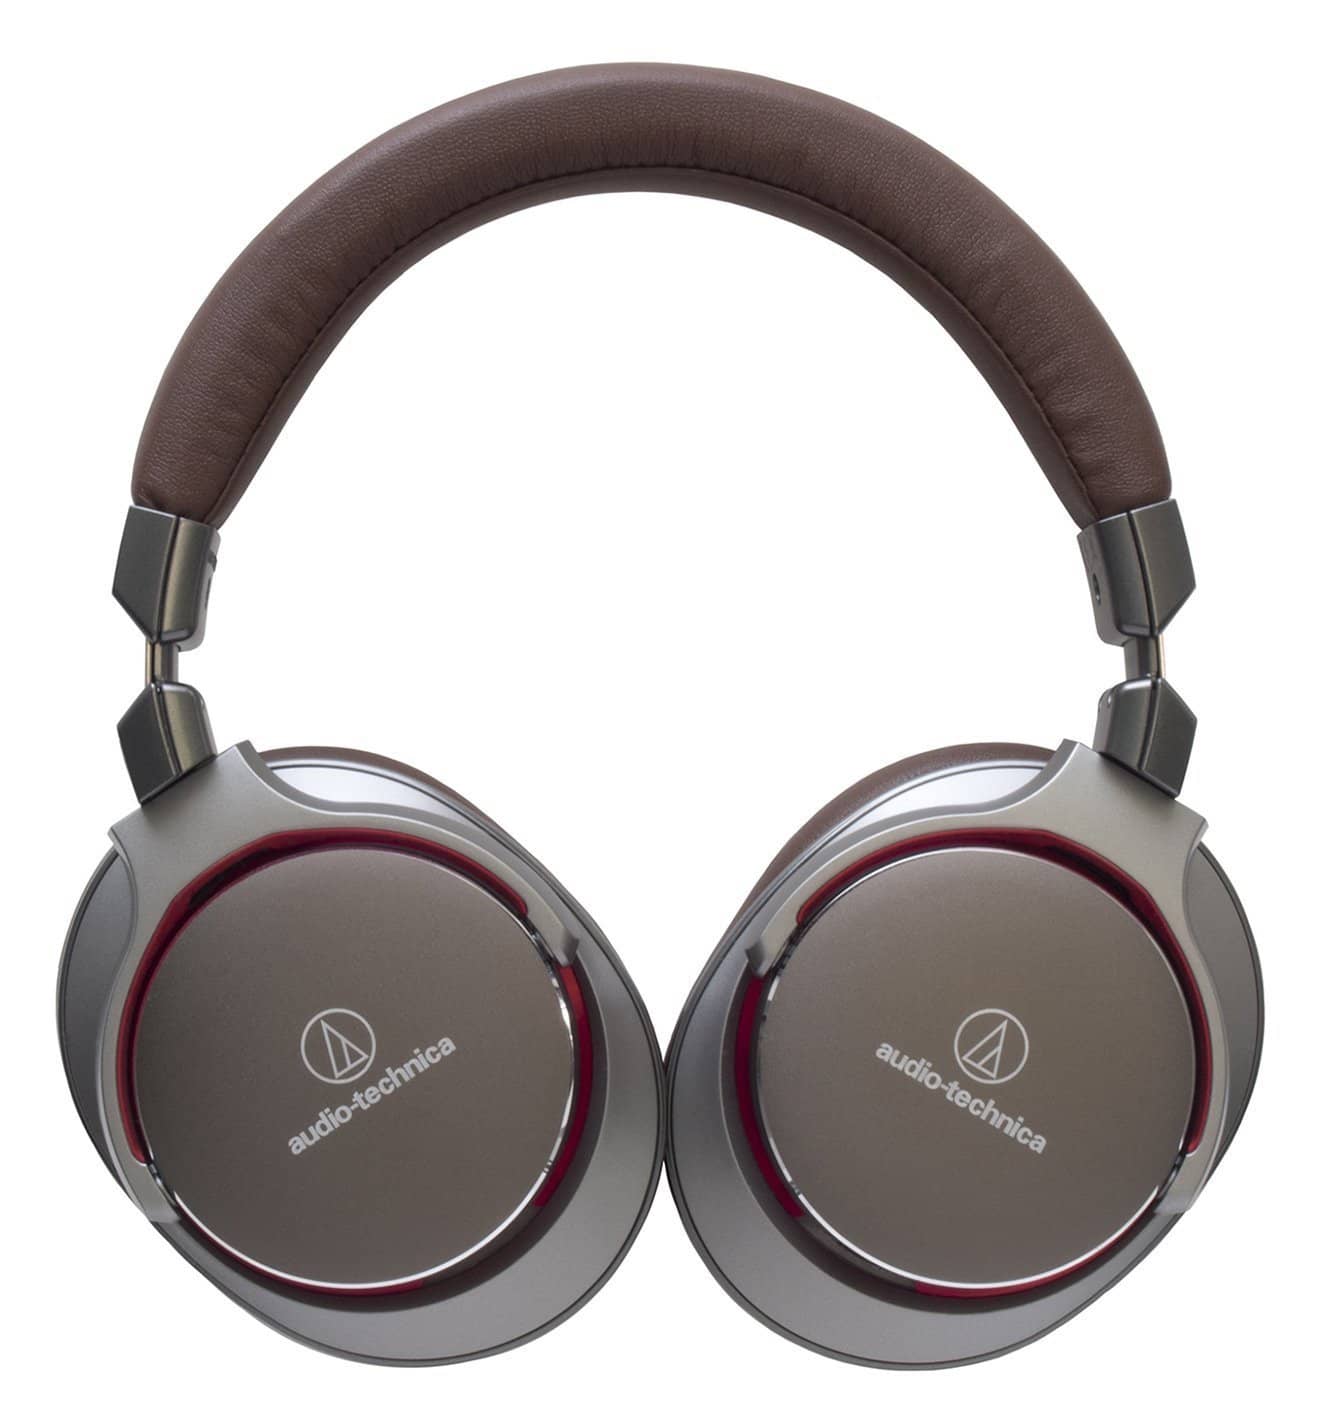 Audio-Technica ATH-MSR7 Audio Over-Ear Headphone